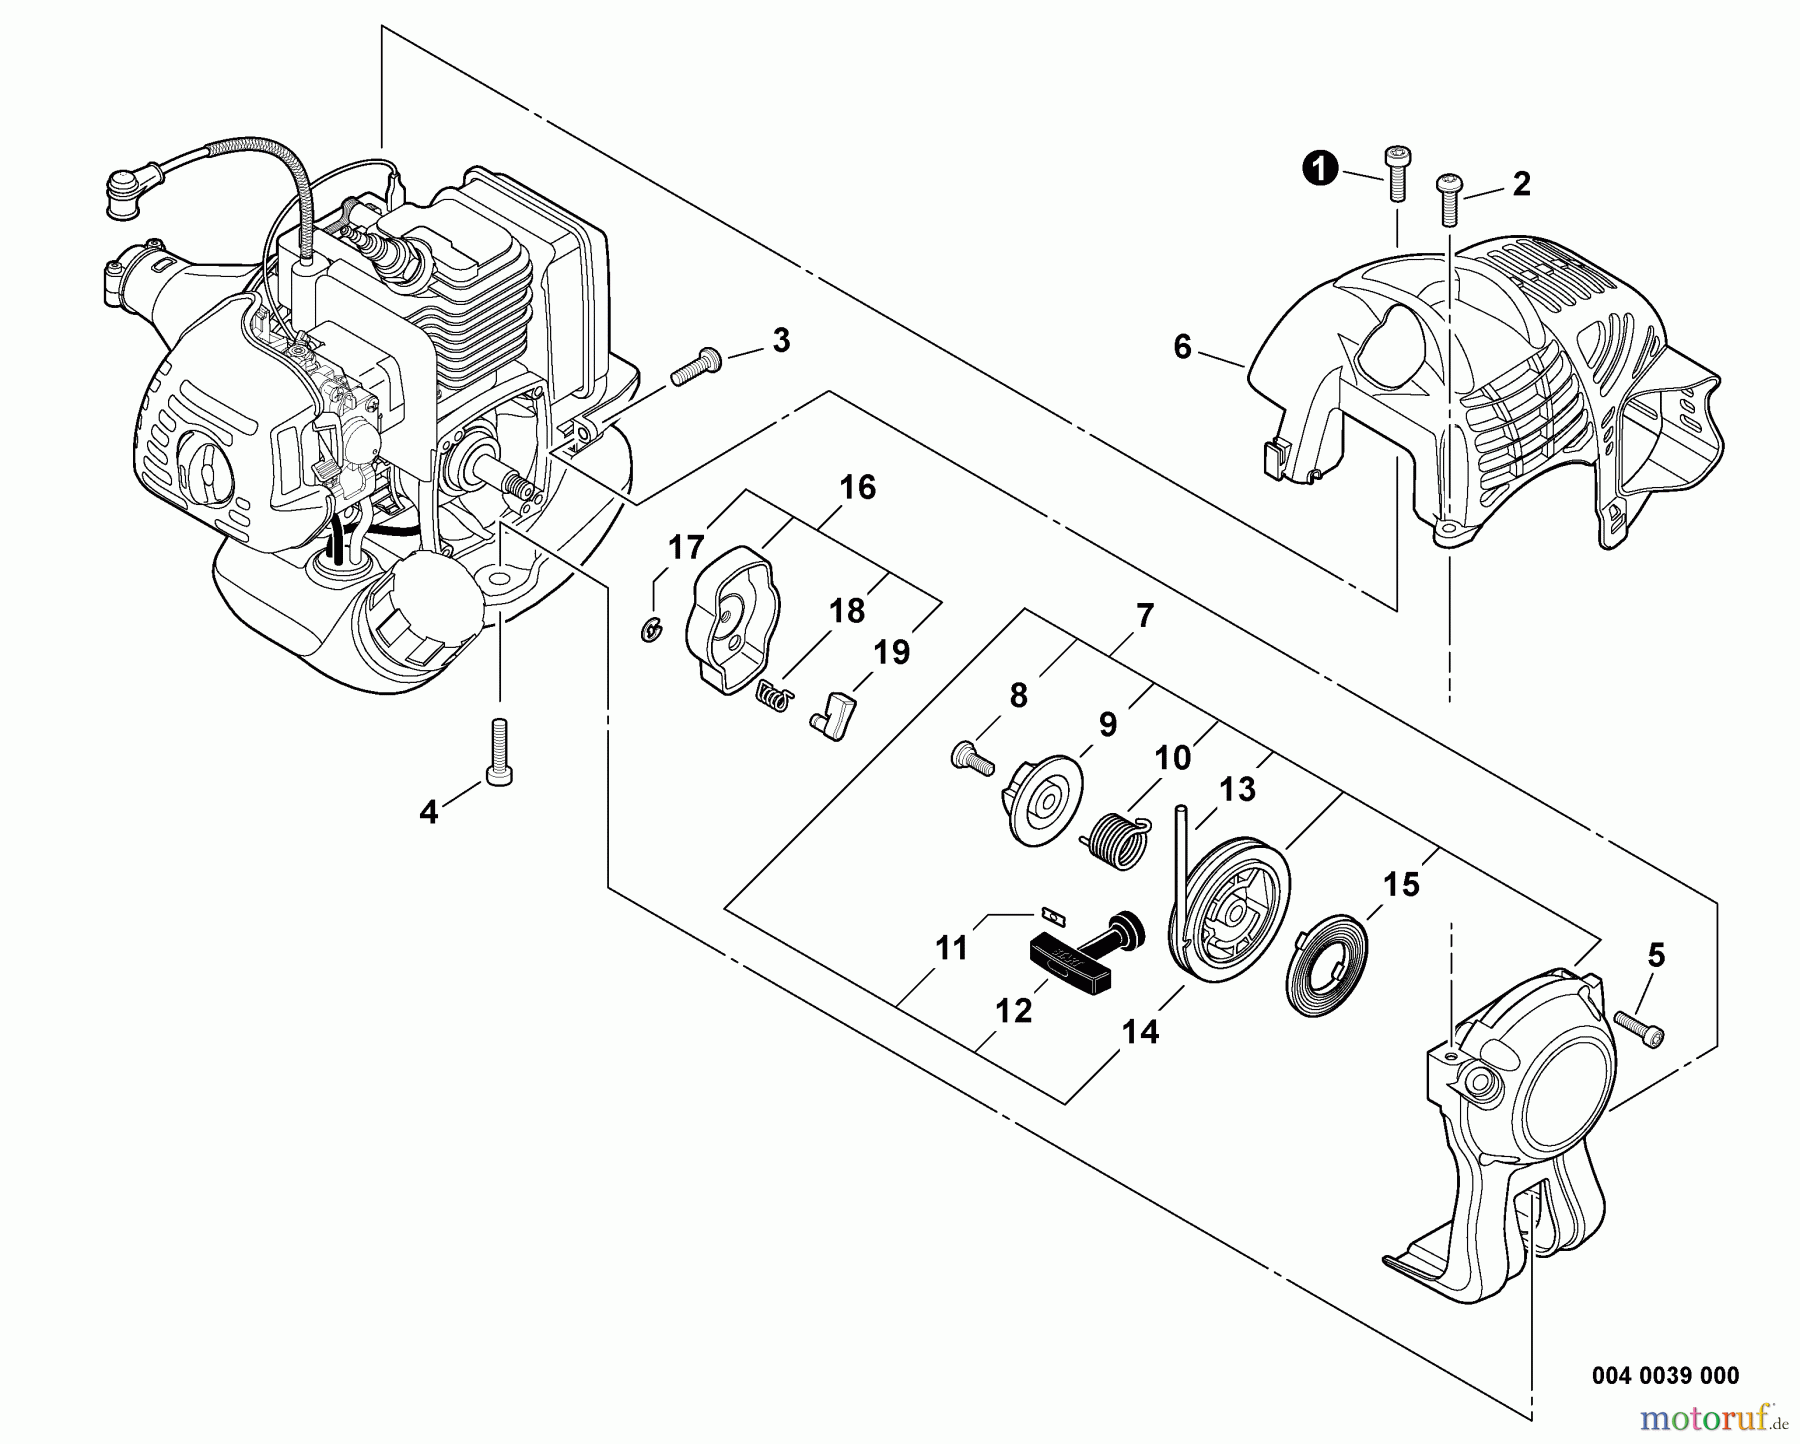  Echo Trimmer, Faden / Bürste SRM-225 - Echo String Trimmer, Engine Cover, Starter